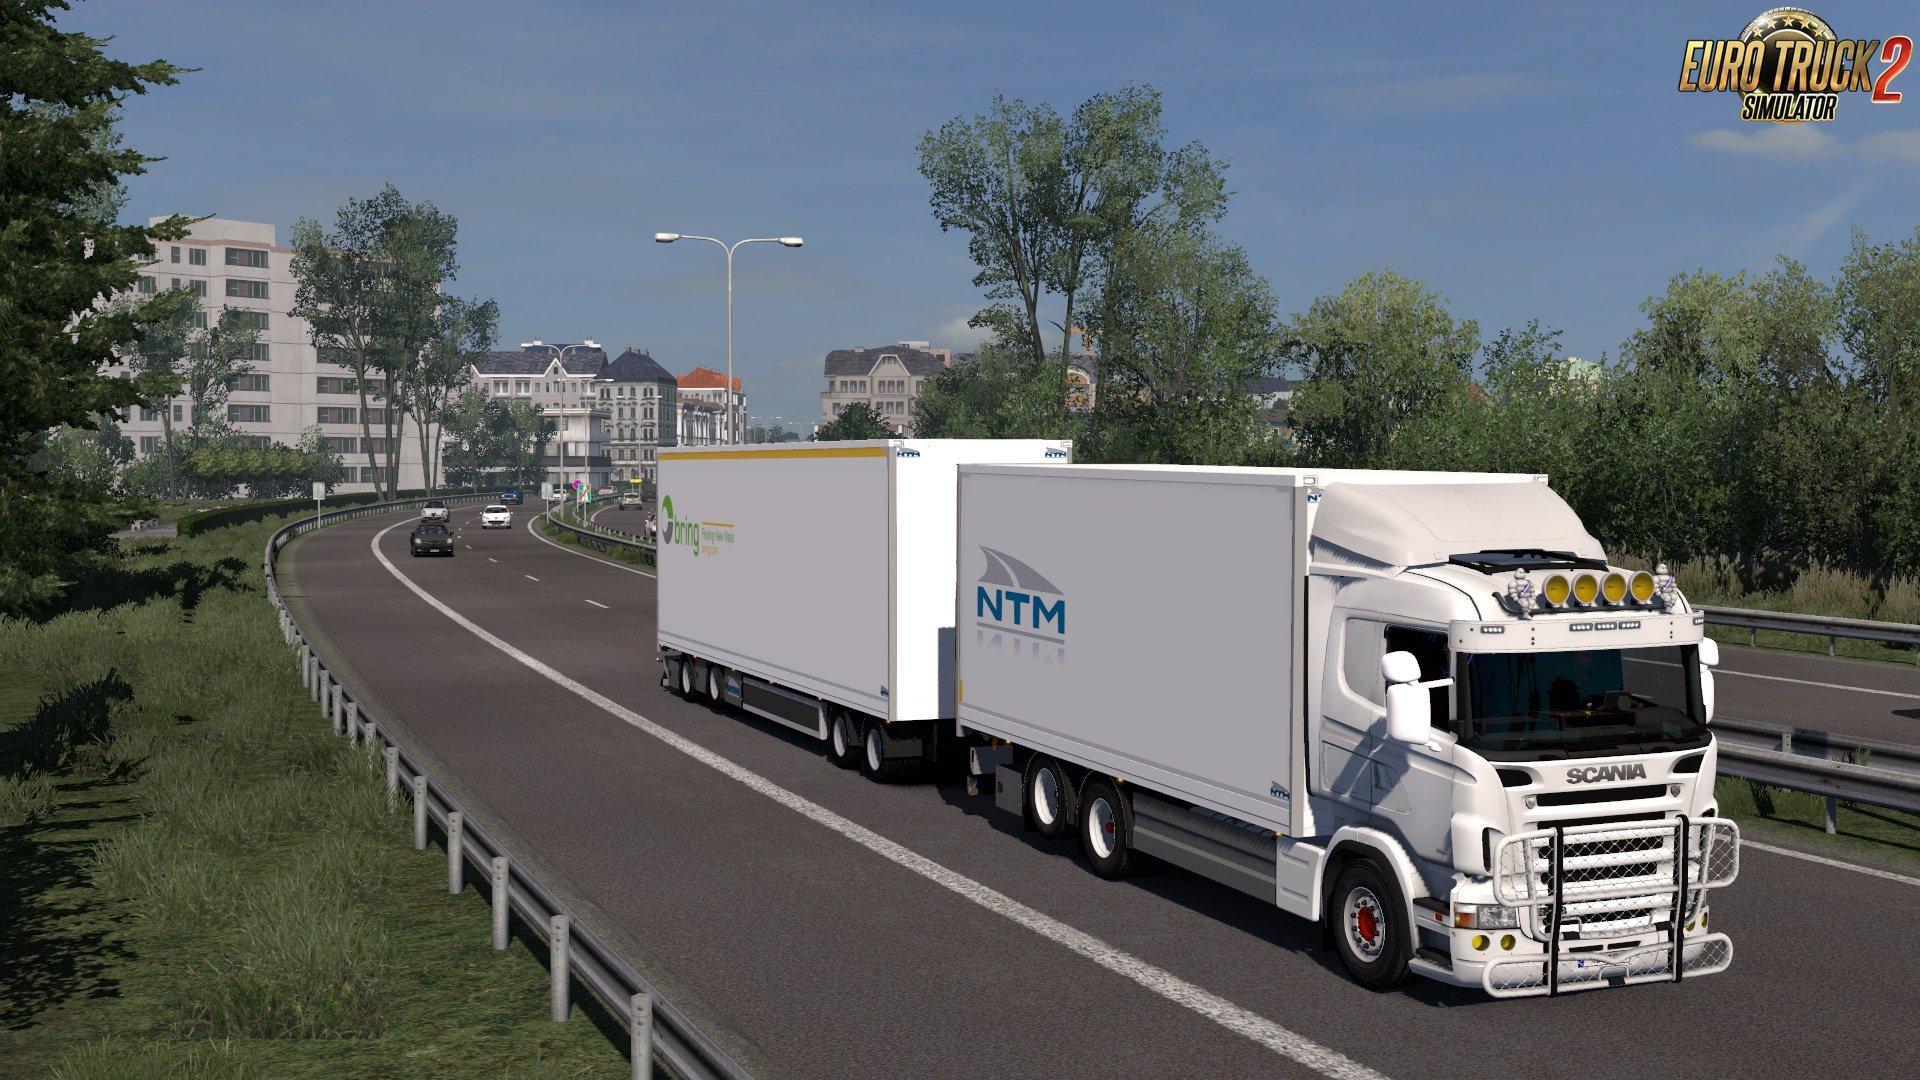 Euro truck simulator моды грузовиков. Евро трак симулятор 1. Прицеп NTM ETS 2. Прицепы для етс 2 1.39. Прицепы для етс 2 1.47.